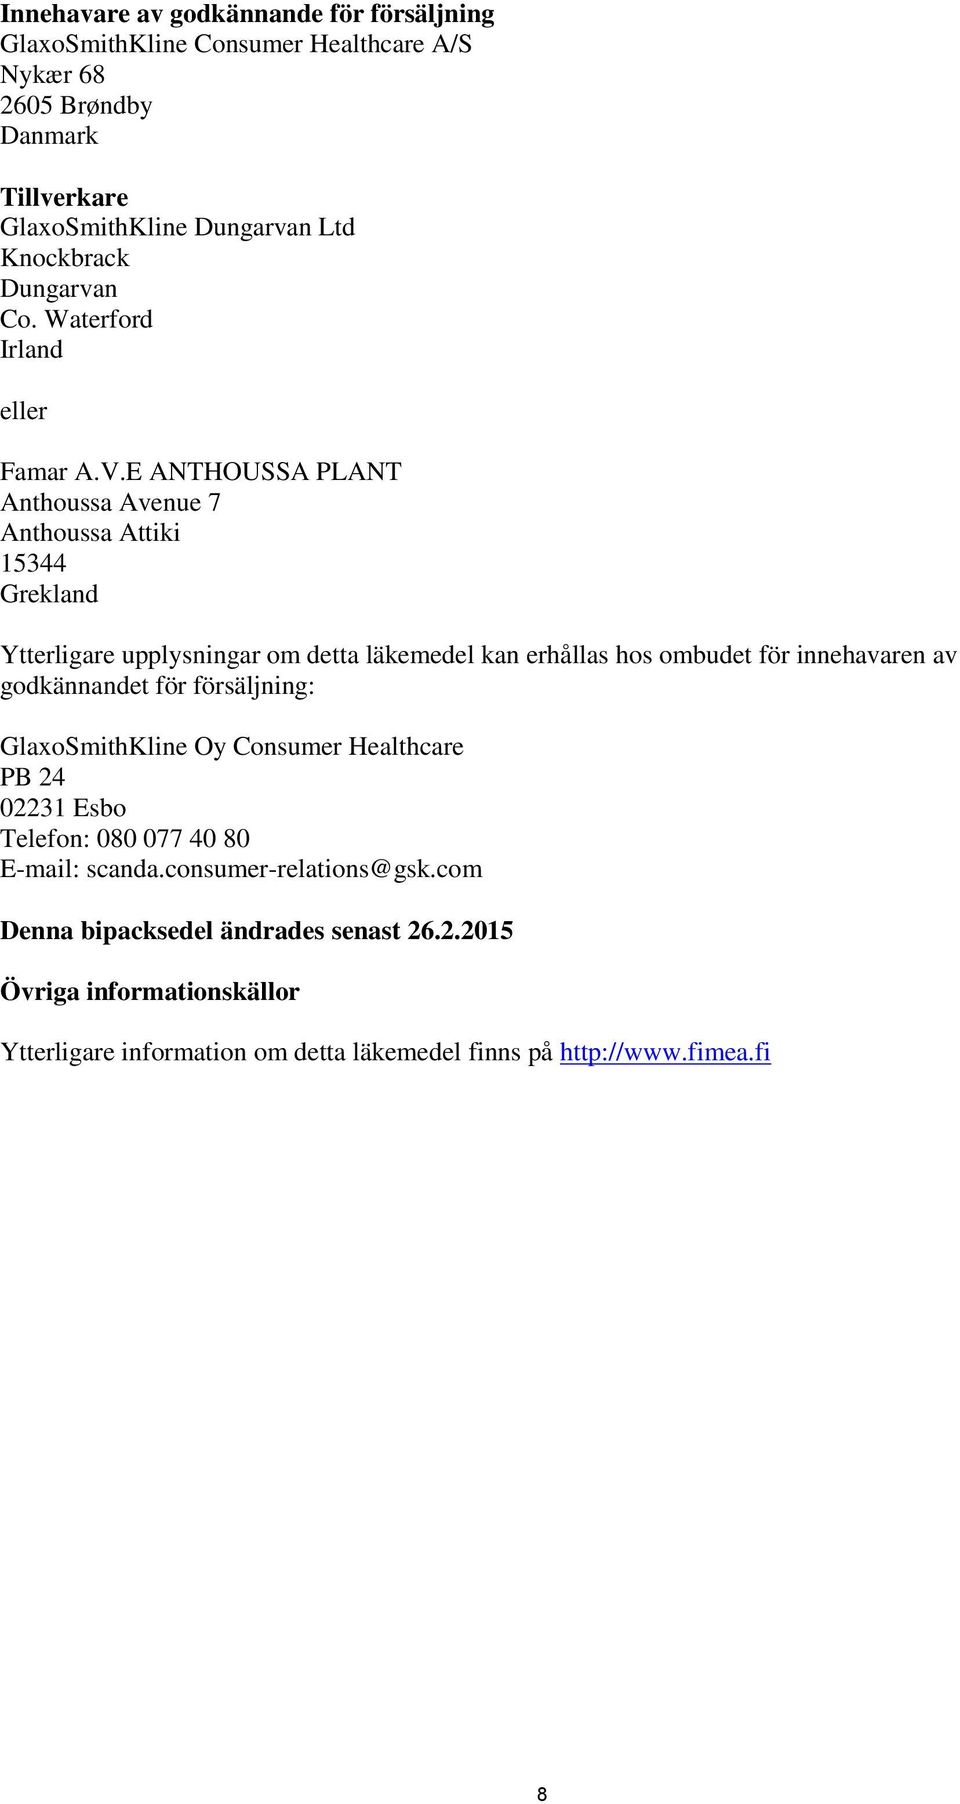 E ANTHOUSSA PLANT Anthoussa Avenue 7 Anthoussa Attiki 15344 Grekland Ytterligare upplysningar om detta läkemedel kan erhållas hos ombudet för innehavaren av